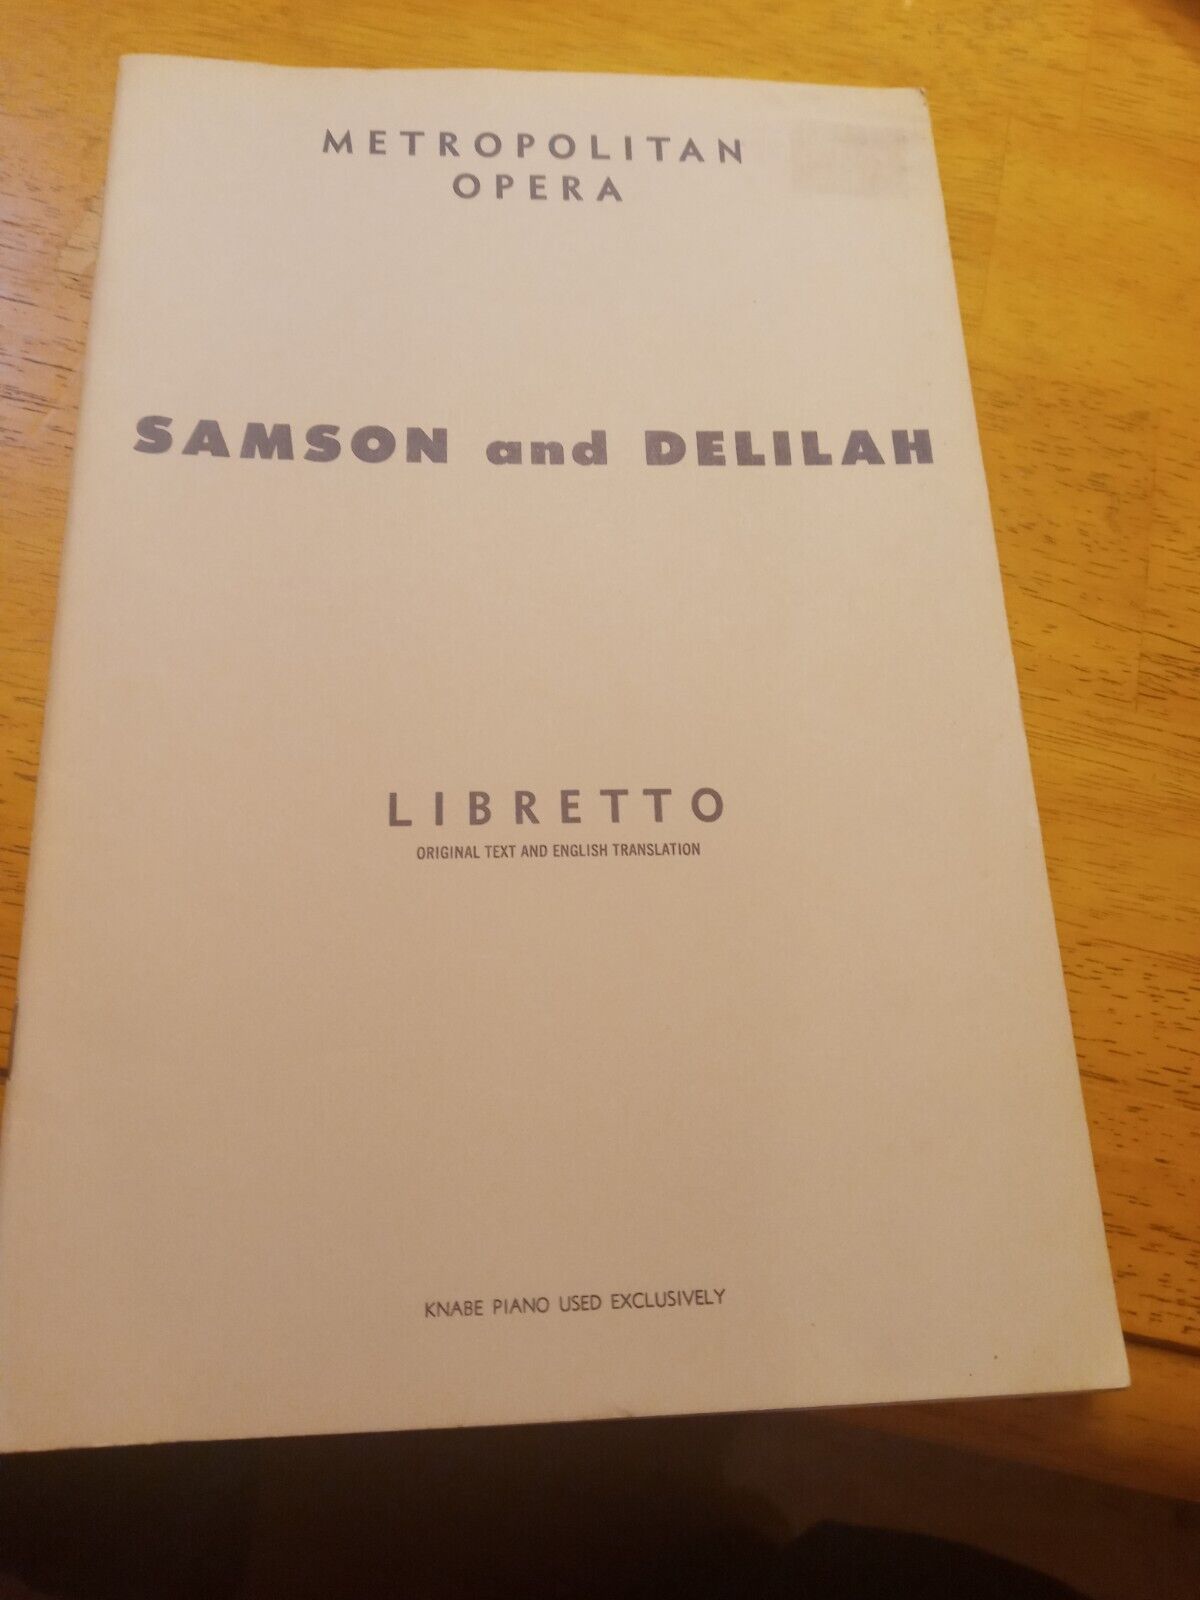 Samson And Delilah  Metropolitan Opera Libretto  1964  Vg